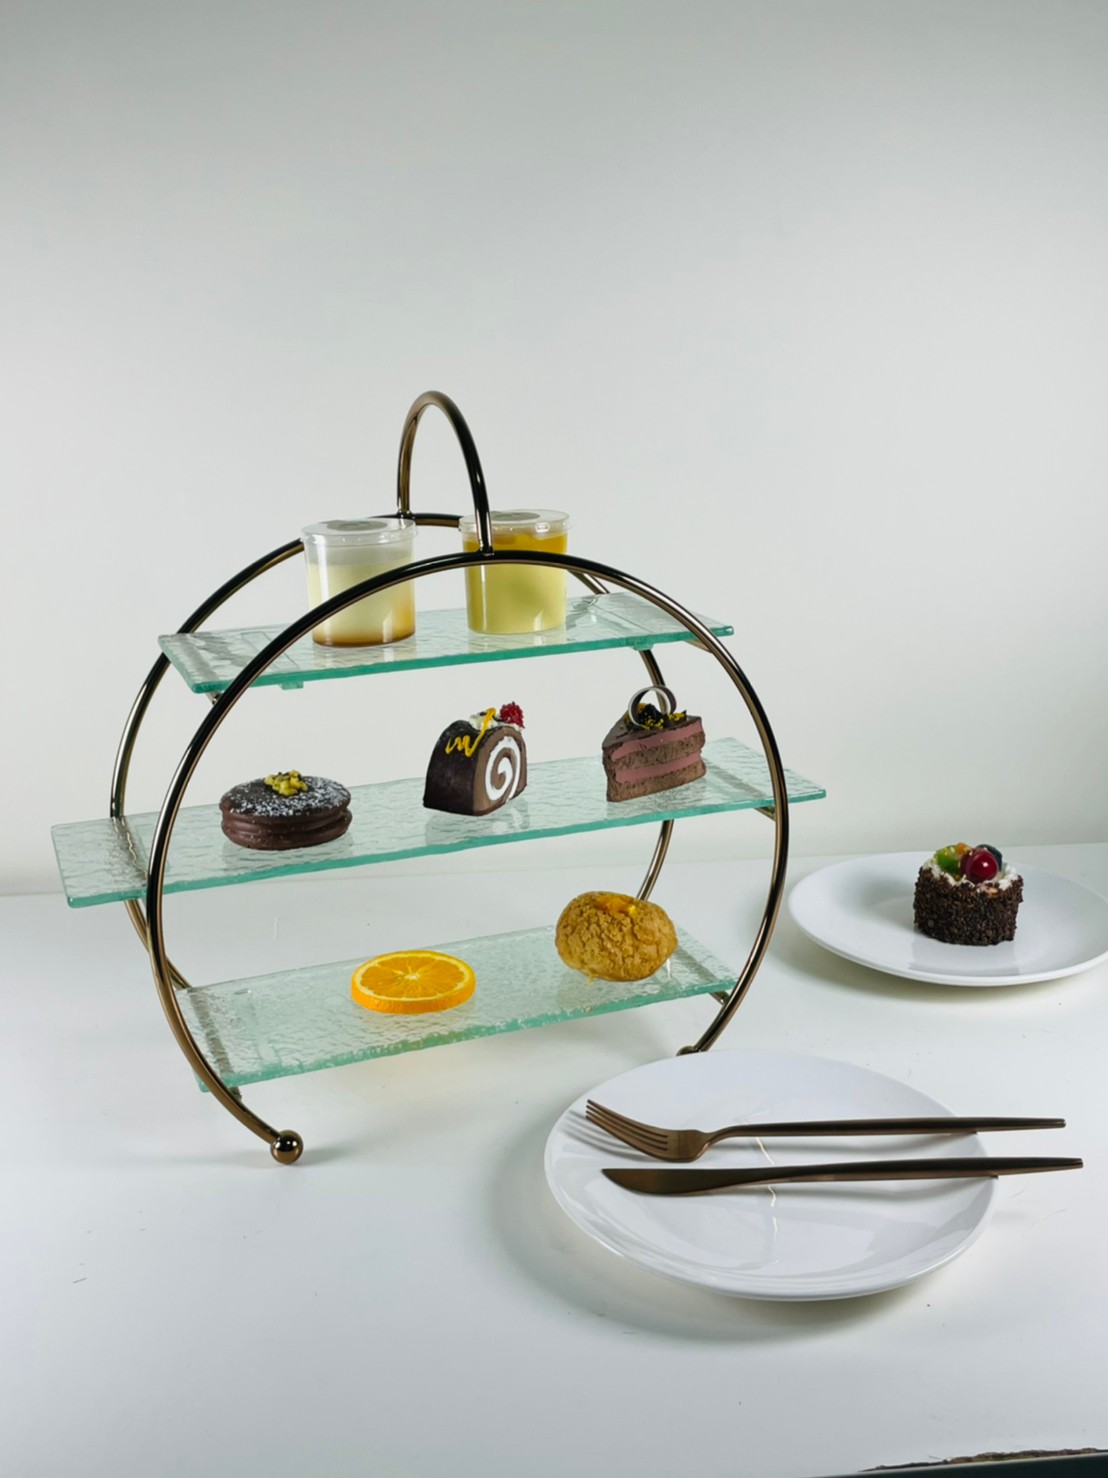 拱型三層下午茶架 特色盤架/蛋糕架/點心架/下午茶架 餐廳愛用 | 第三張展示圖